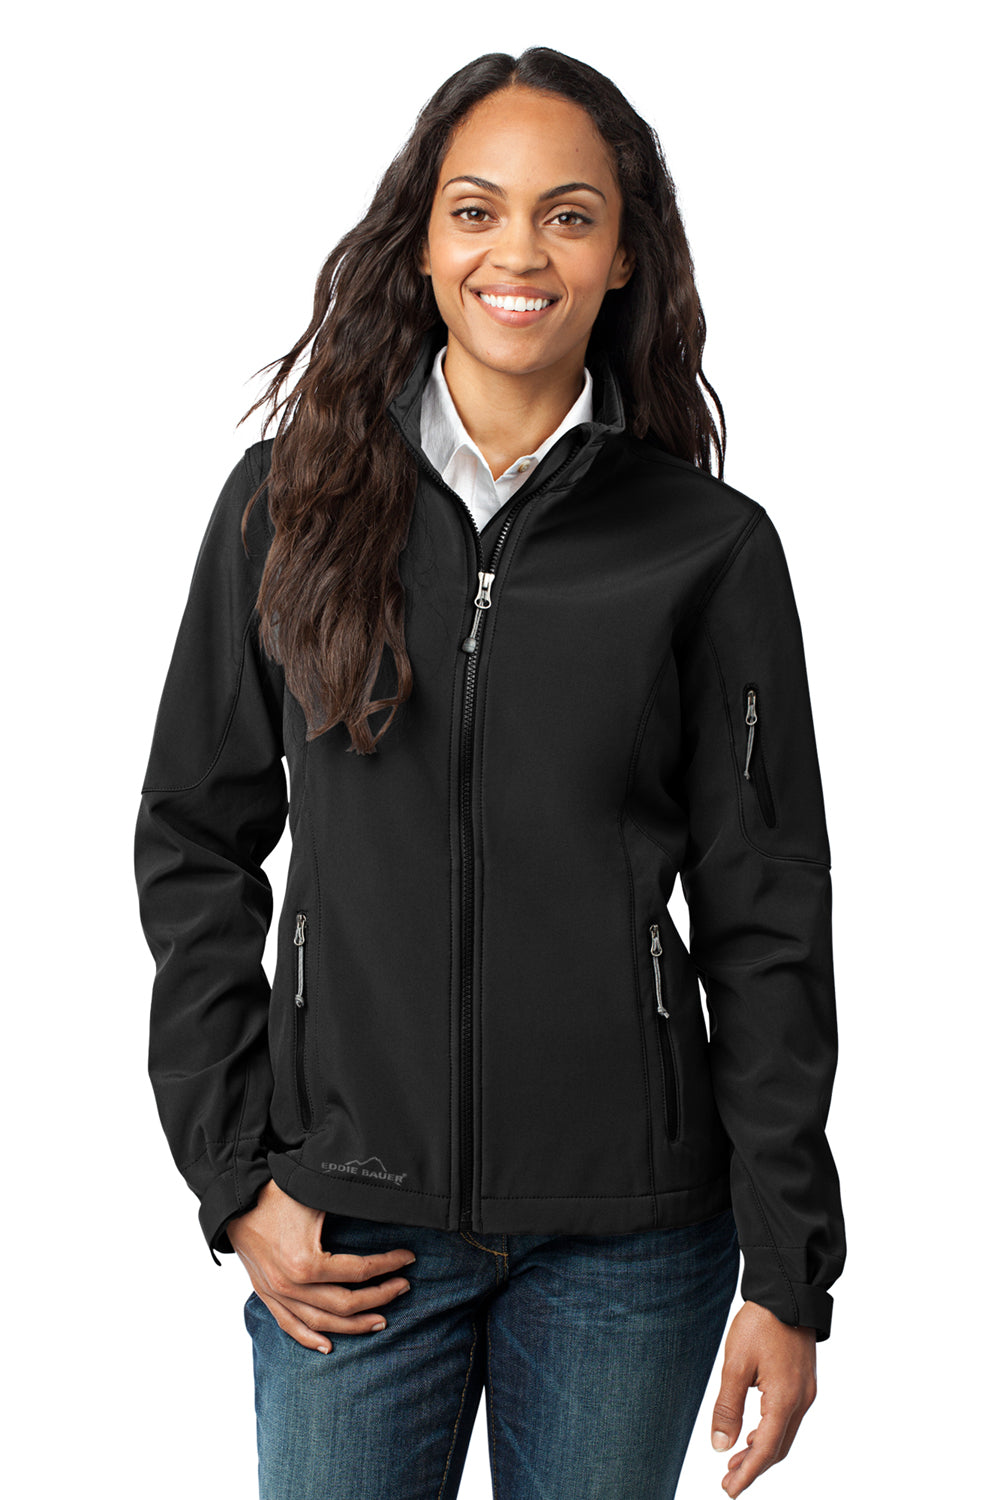 Eddie Bauer EB531 Womens Water Resistant Full Zip Jacket Black Model Front